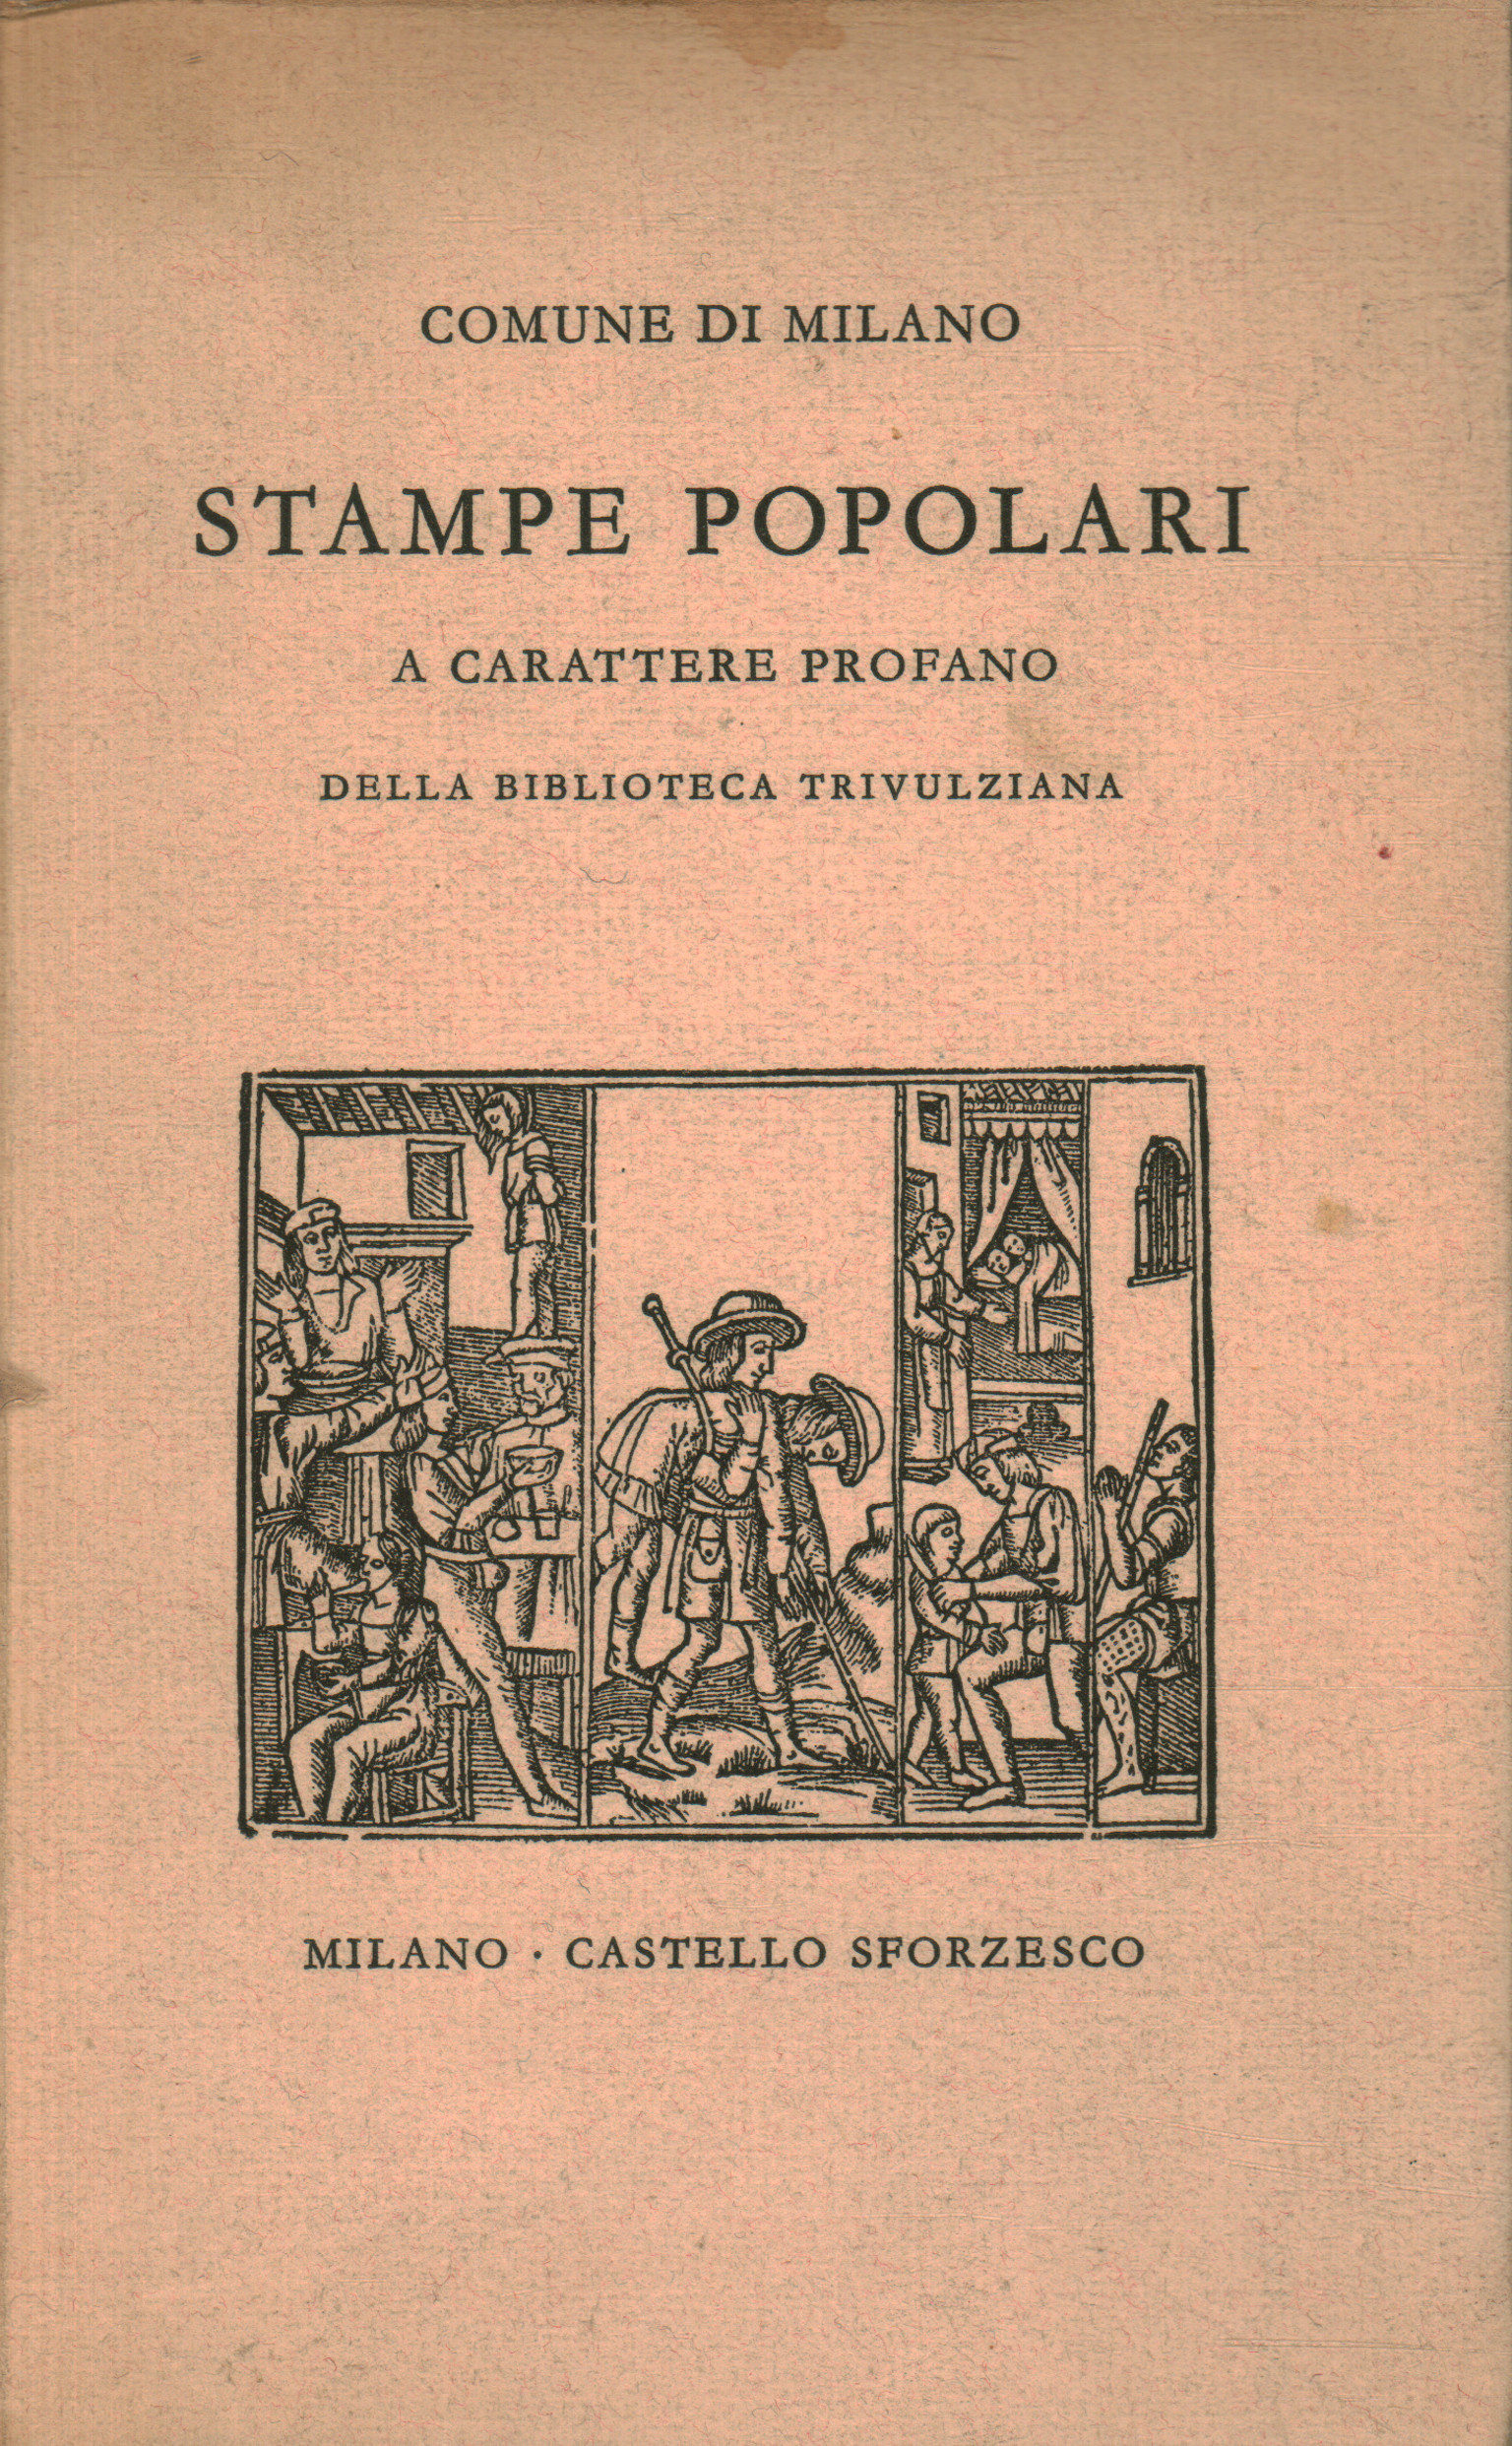 Beliebte Drucke aus der Trivulzia-Bibliothek